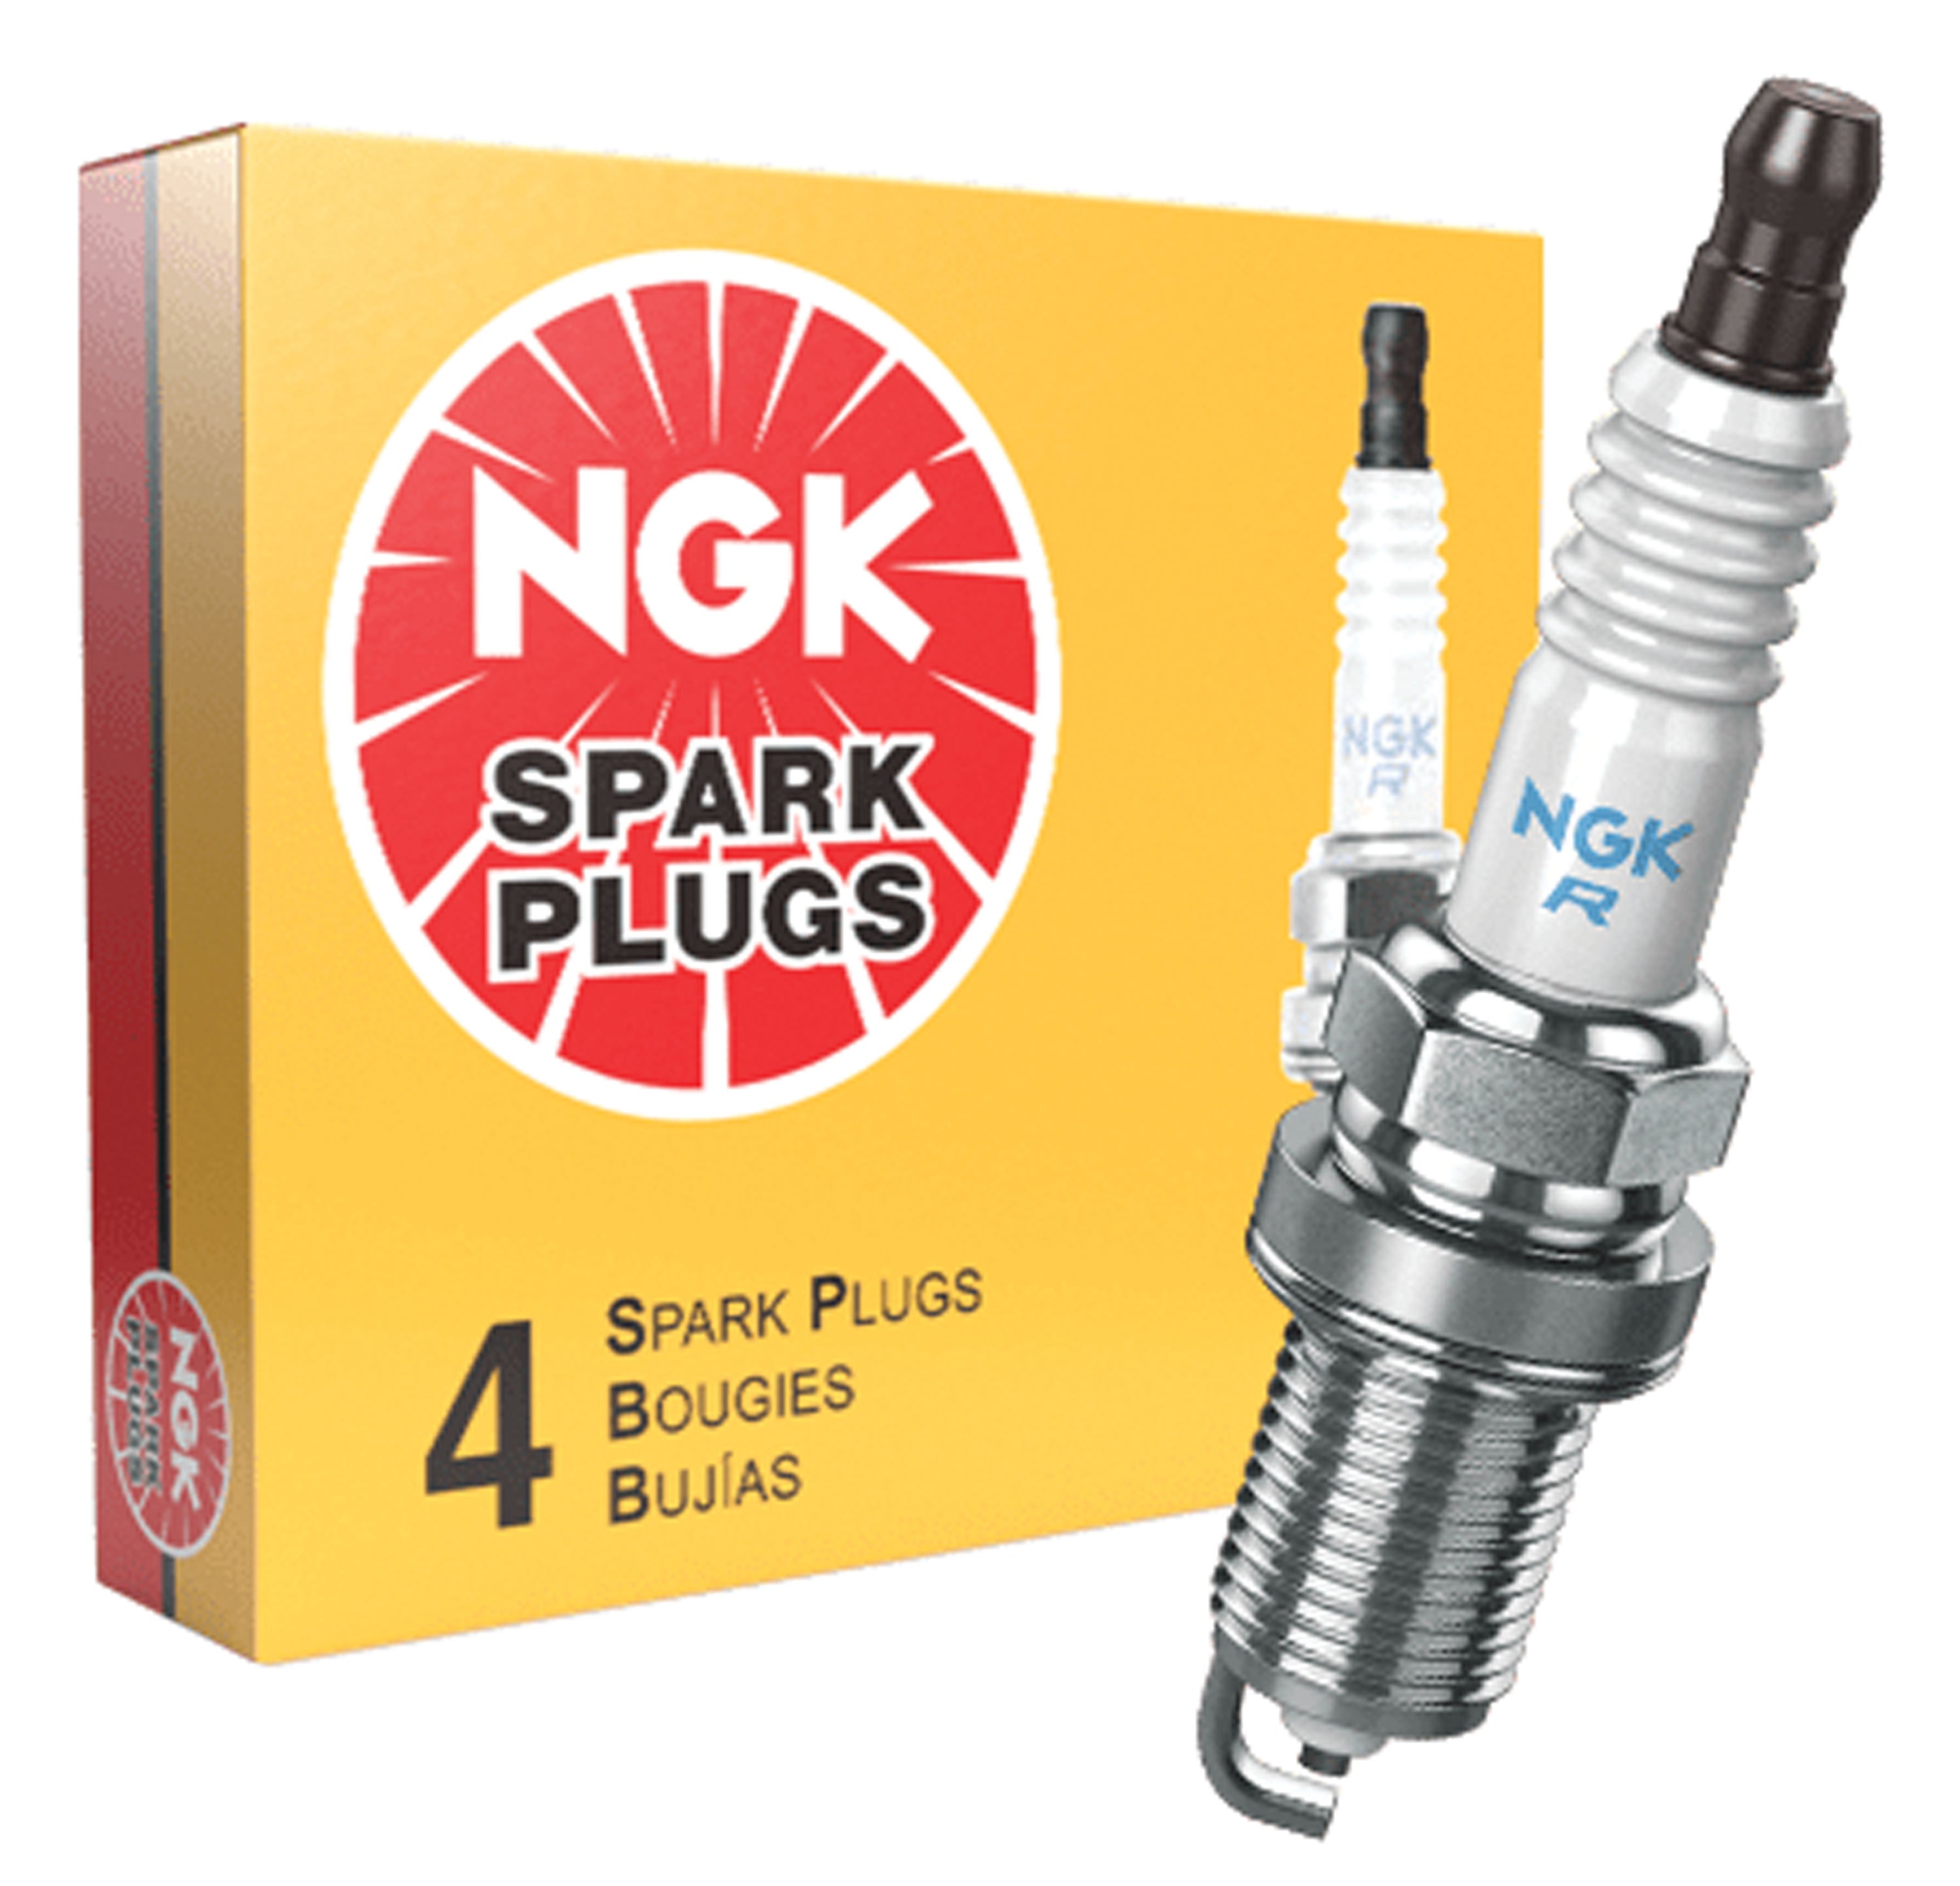 NGK 5122 Standard Spark Plug - BR7ES, 4 Pack